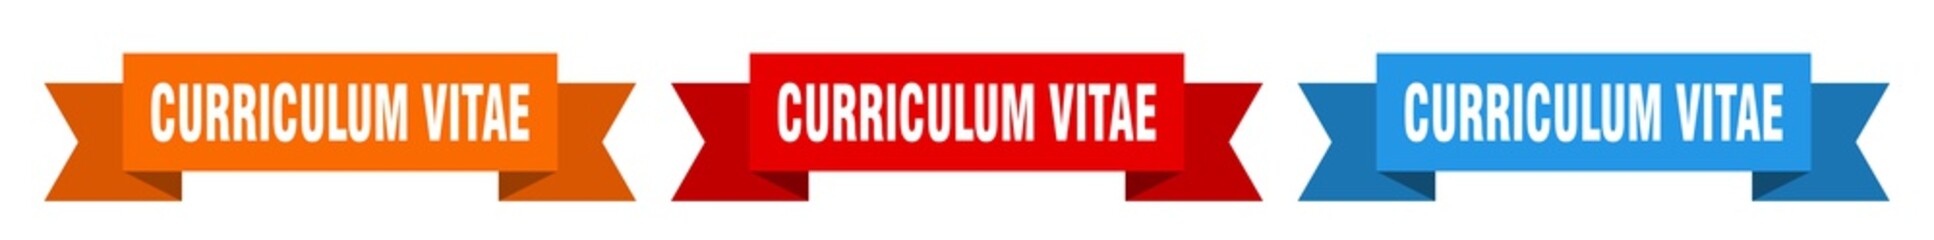 curriculum vitae ribbon. curriculum vitae isolated paper sign. banner